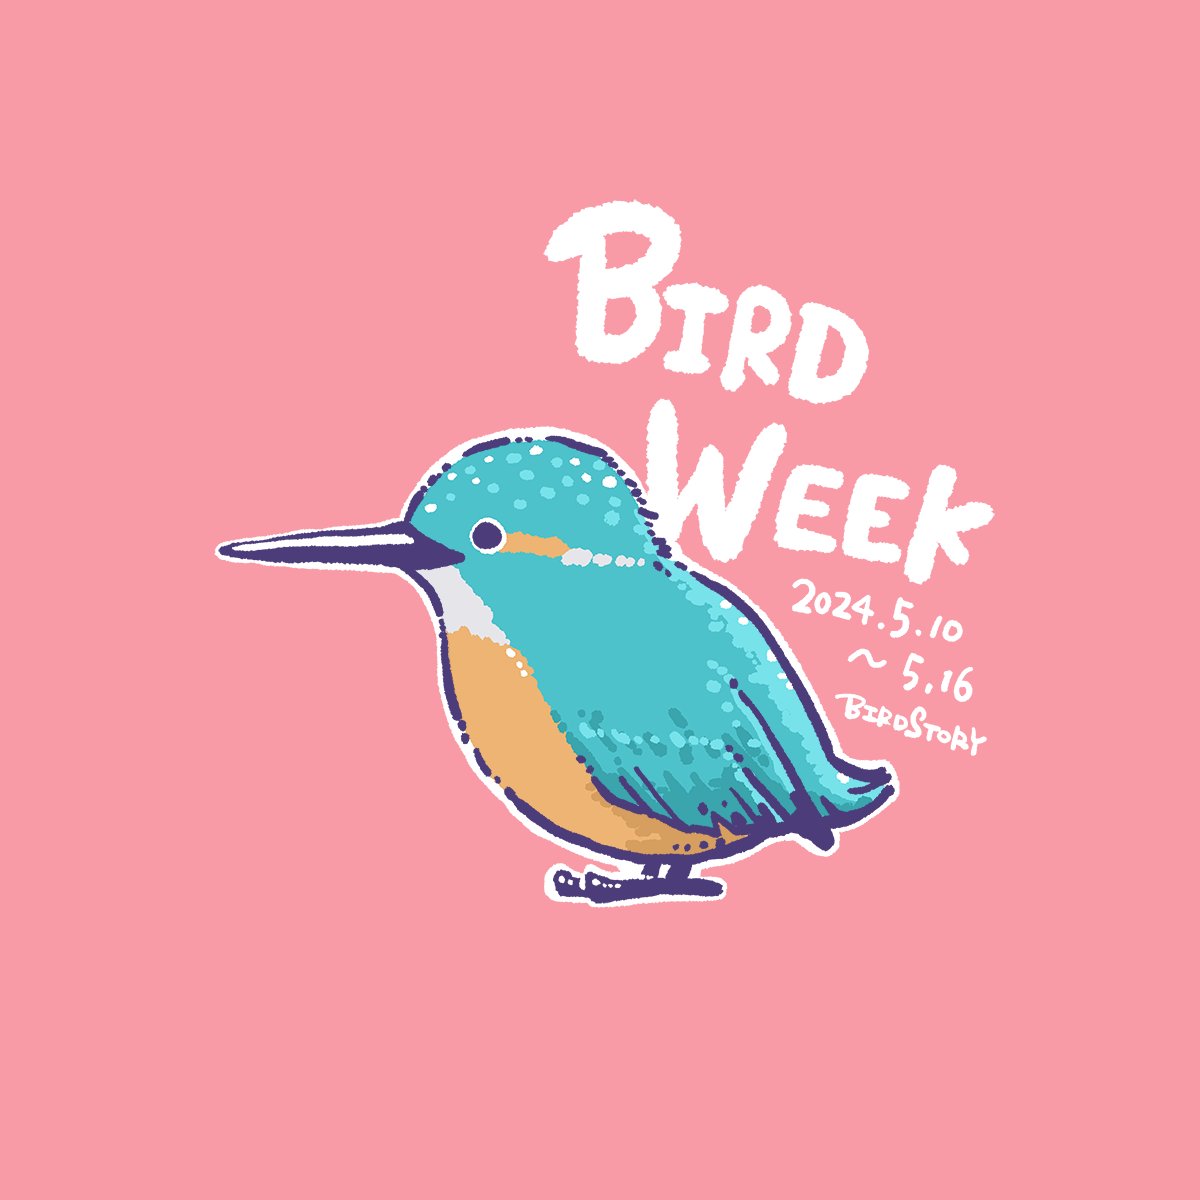 おはようございます。
本日は5月10日、今日から16日まで、愛鳥週間とのことです🐦
よき一週間になりますように🐣
#BIRDSTORY 
#愛鳥週間 #カワセミ